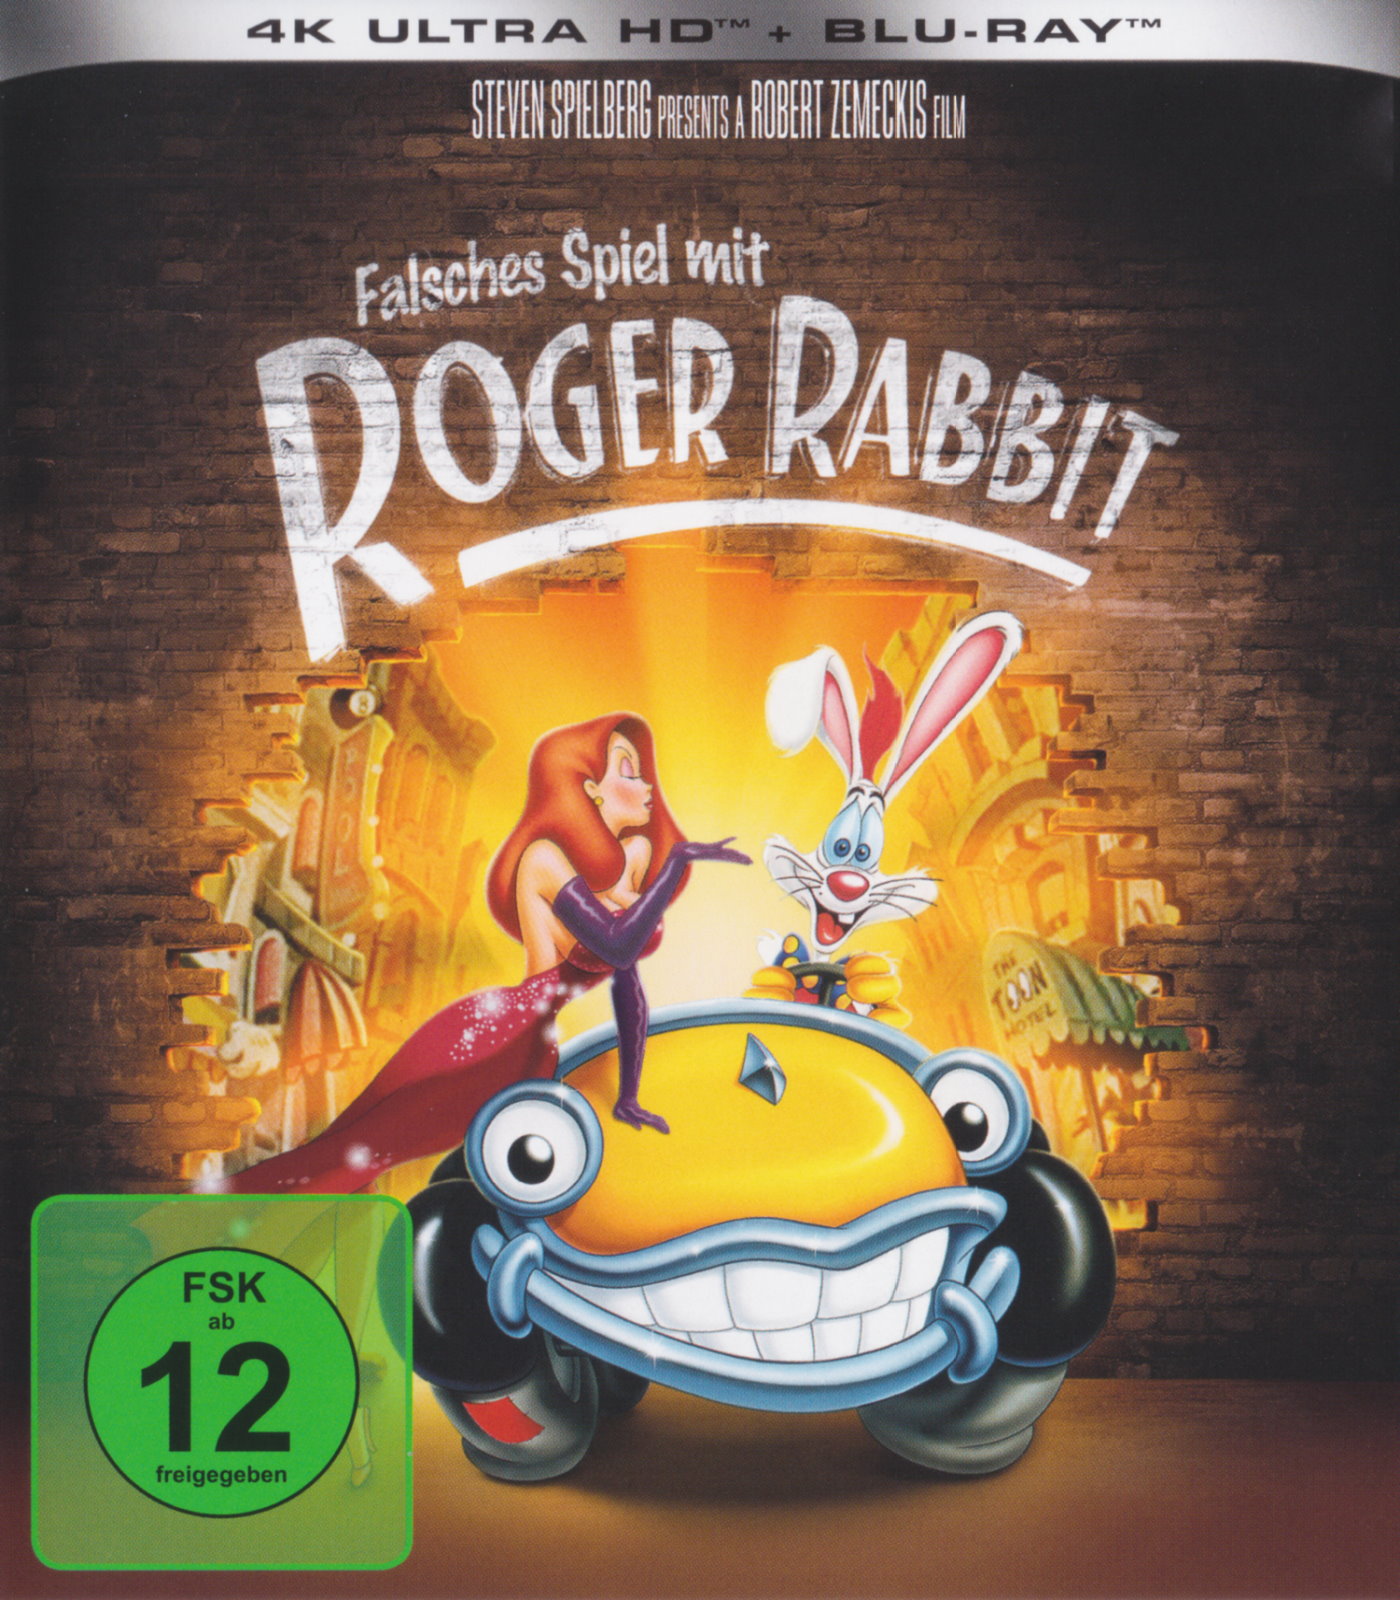 Cover - Falsches Spiel mit Roger Rabbit.jpg